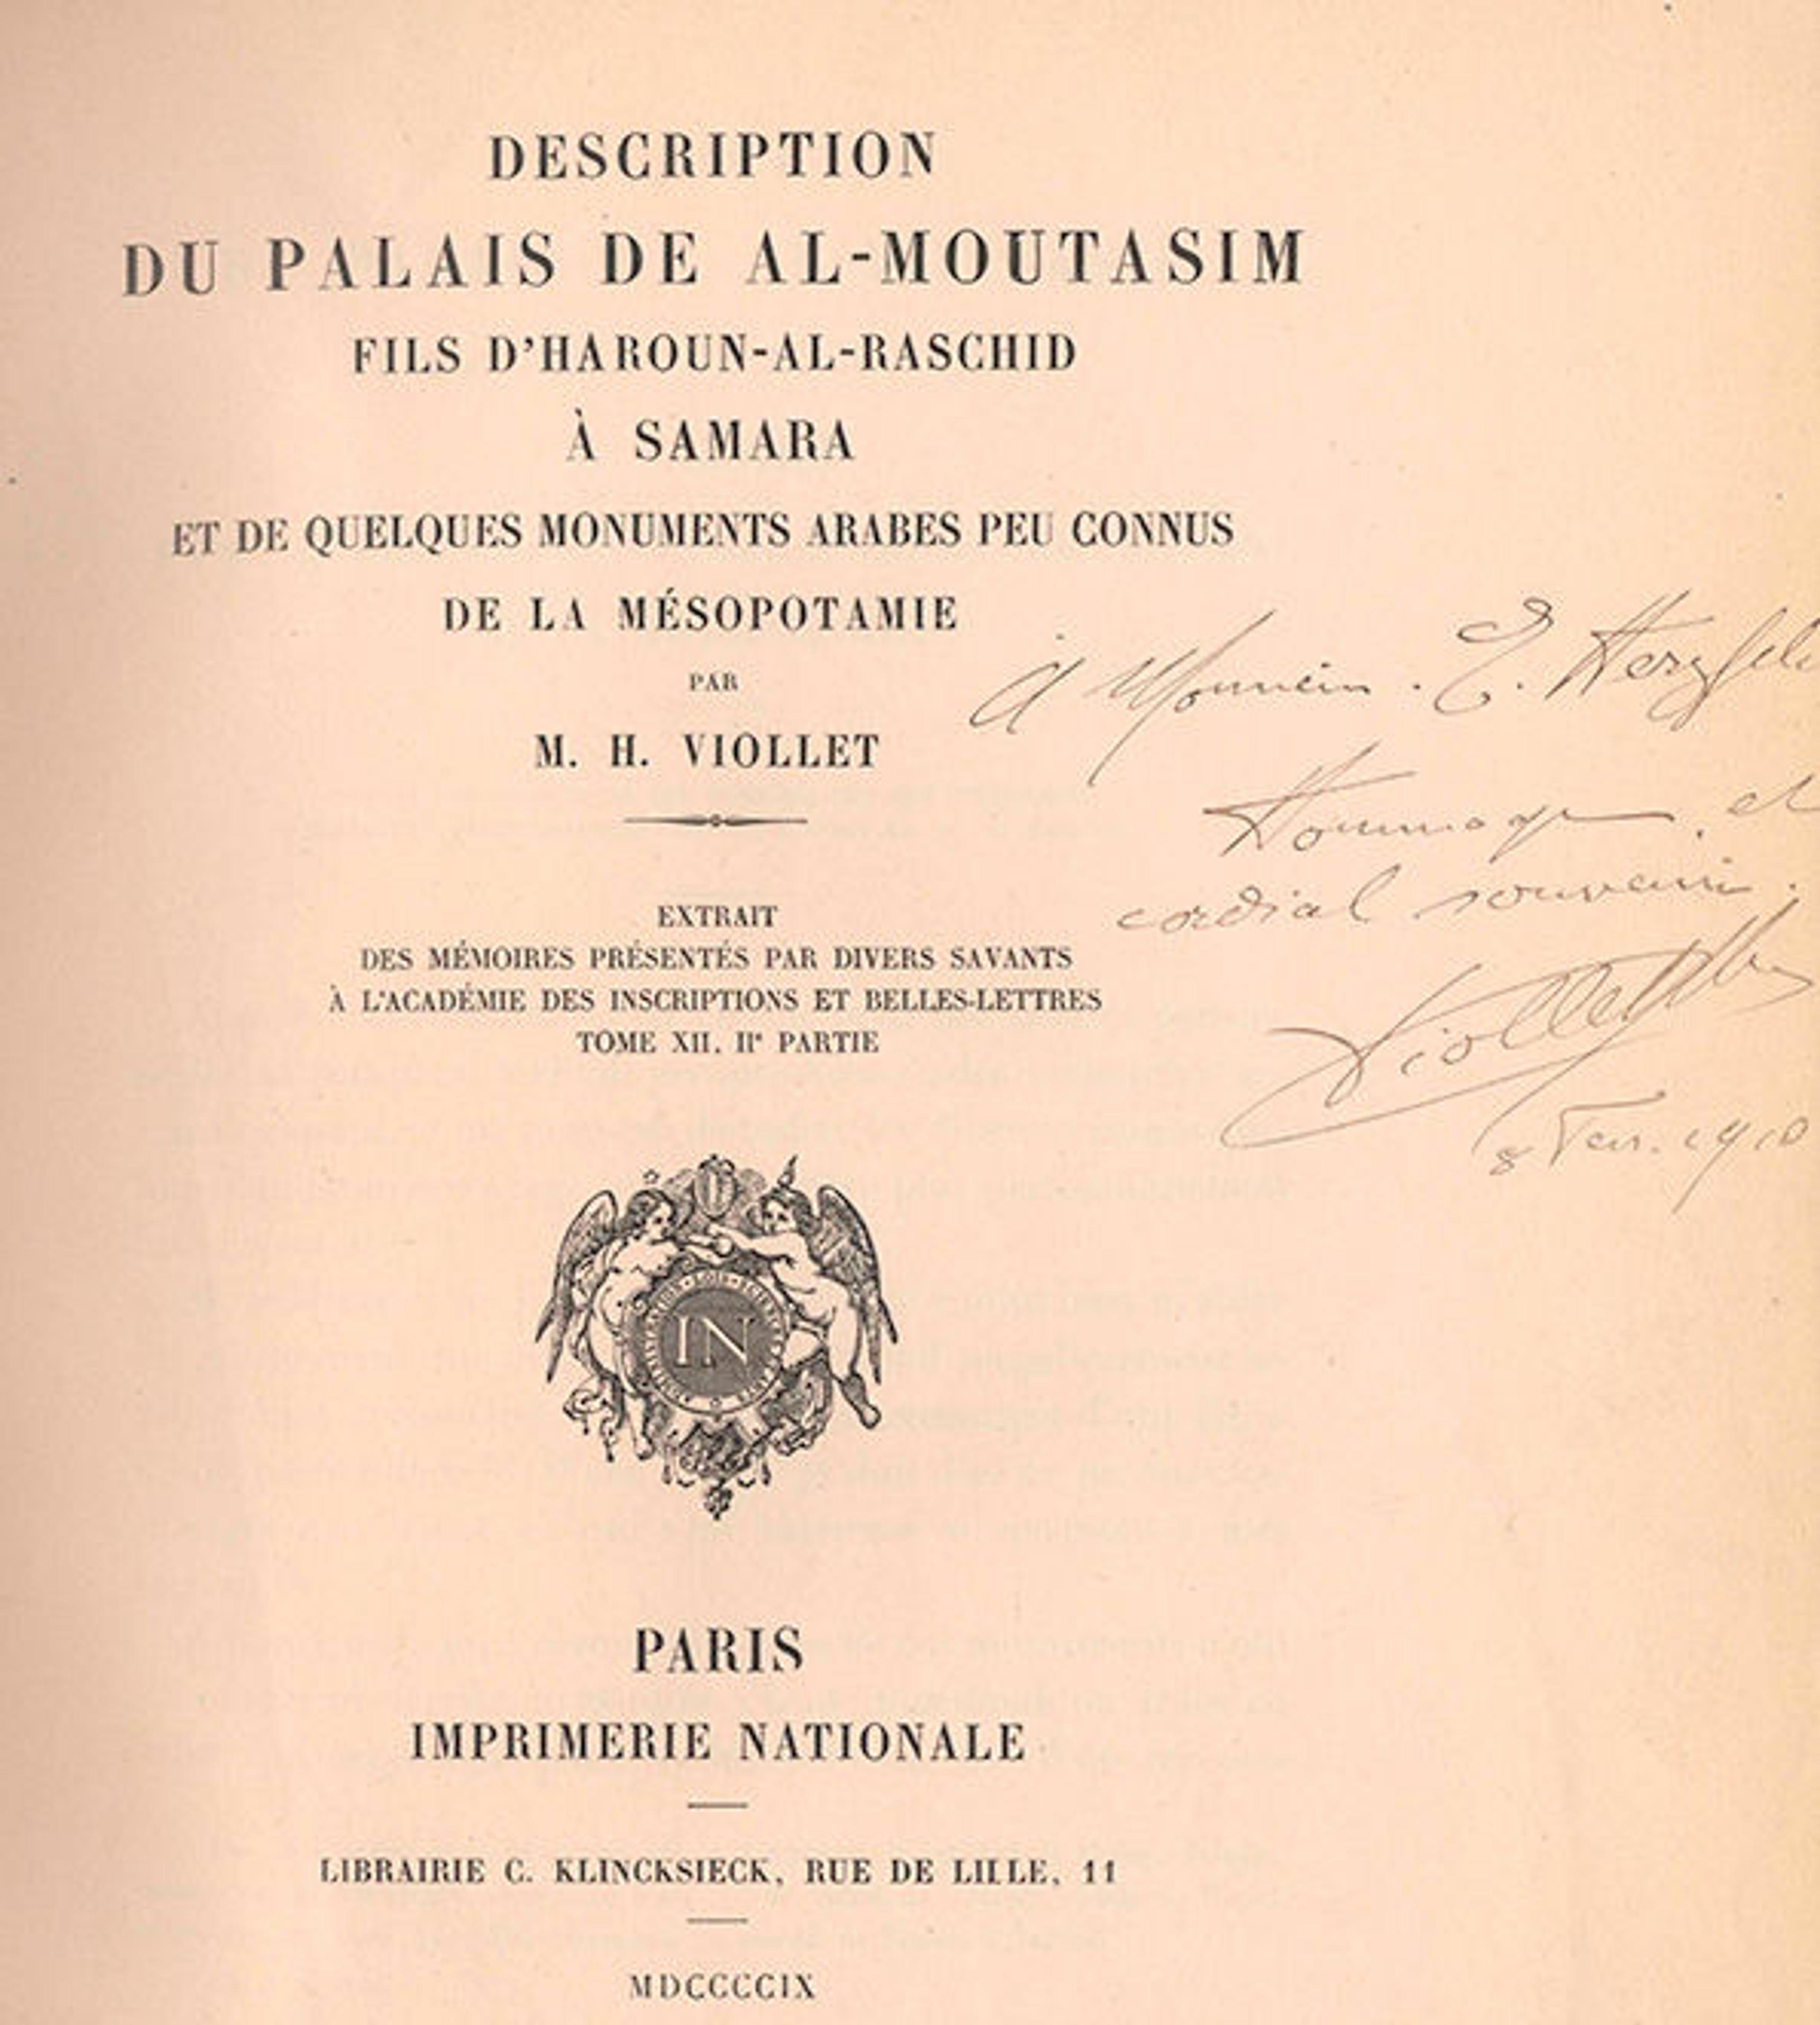 Front page to Herzfeld's copy of H. Viollet, Description du Palais de Al-Moutasim, fils d'Haroun-al-Raschid à Samara 